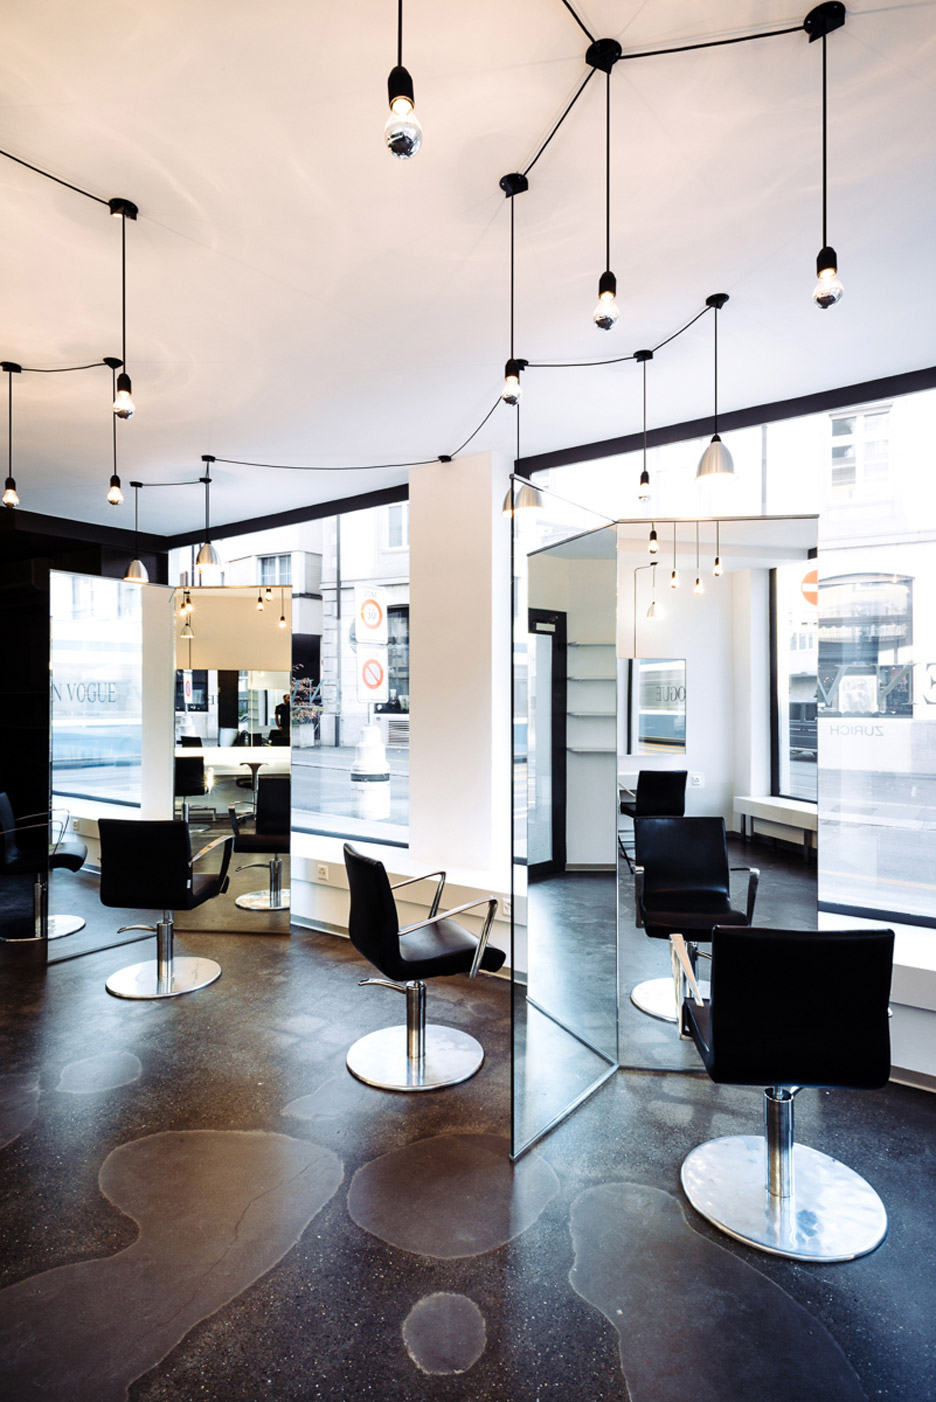 Sculptural mirrors frame spaces in Zurich barbershop by Wülser Bechtel Architekten